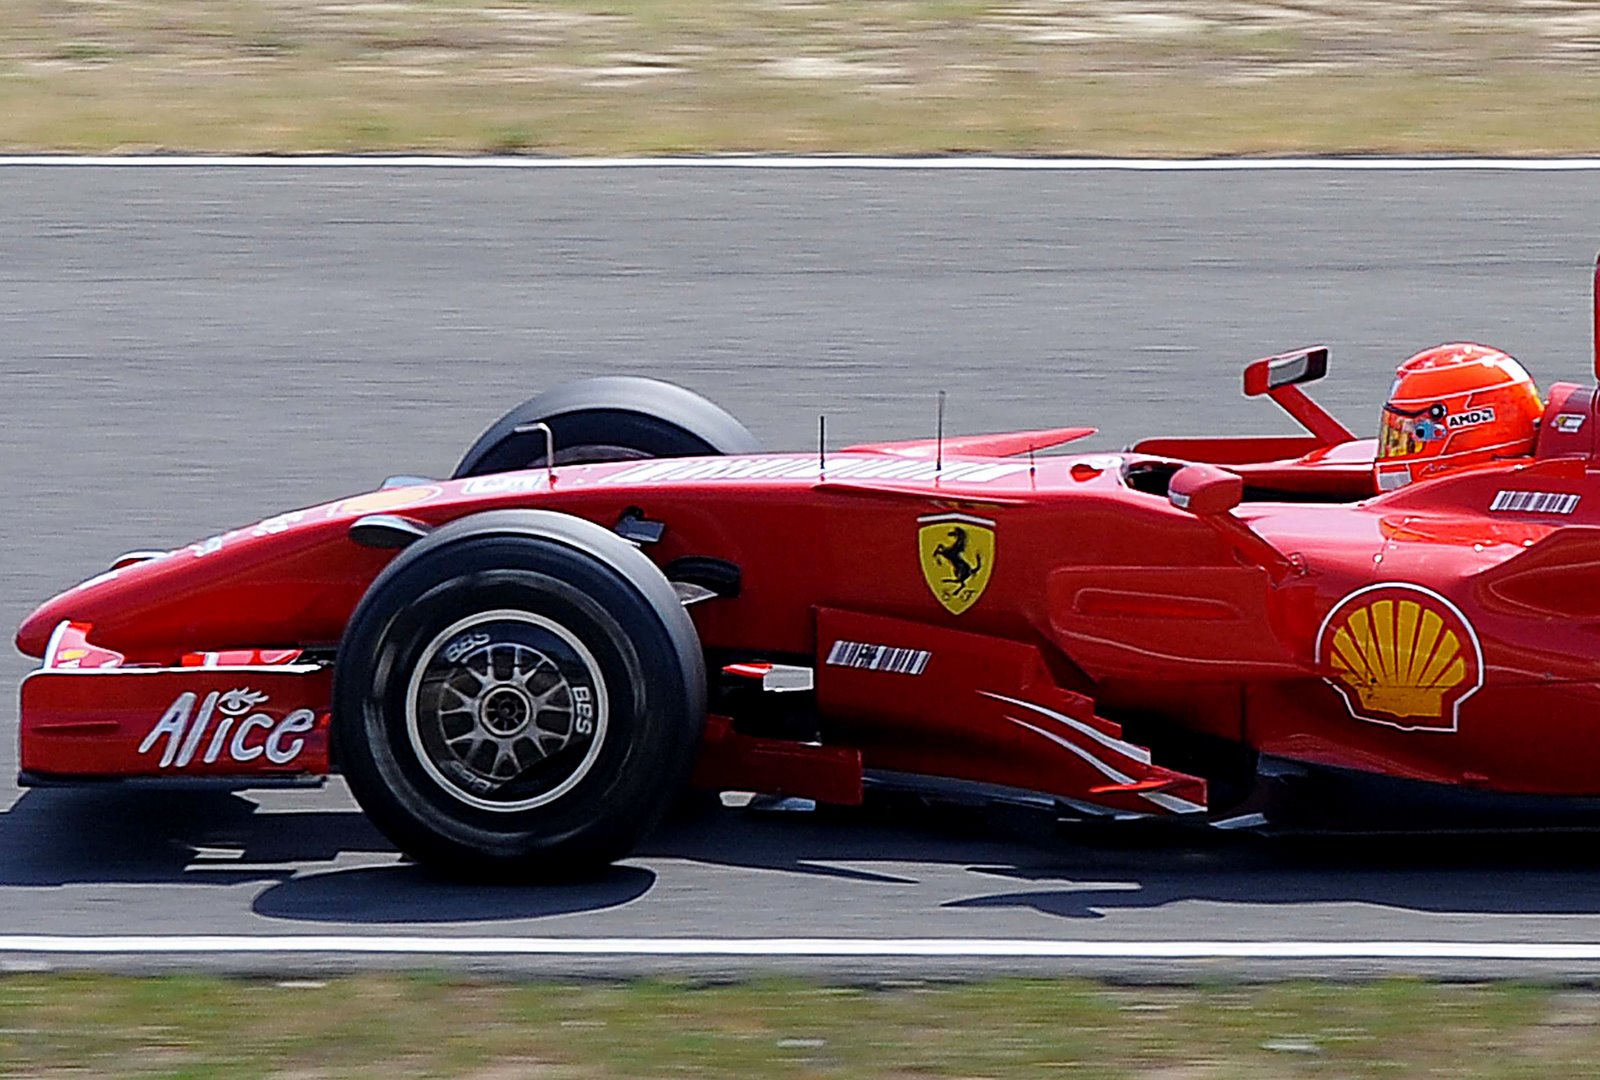 [Michael+Schumacher+drives.JPG]